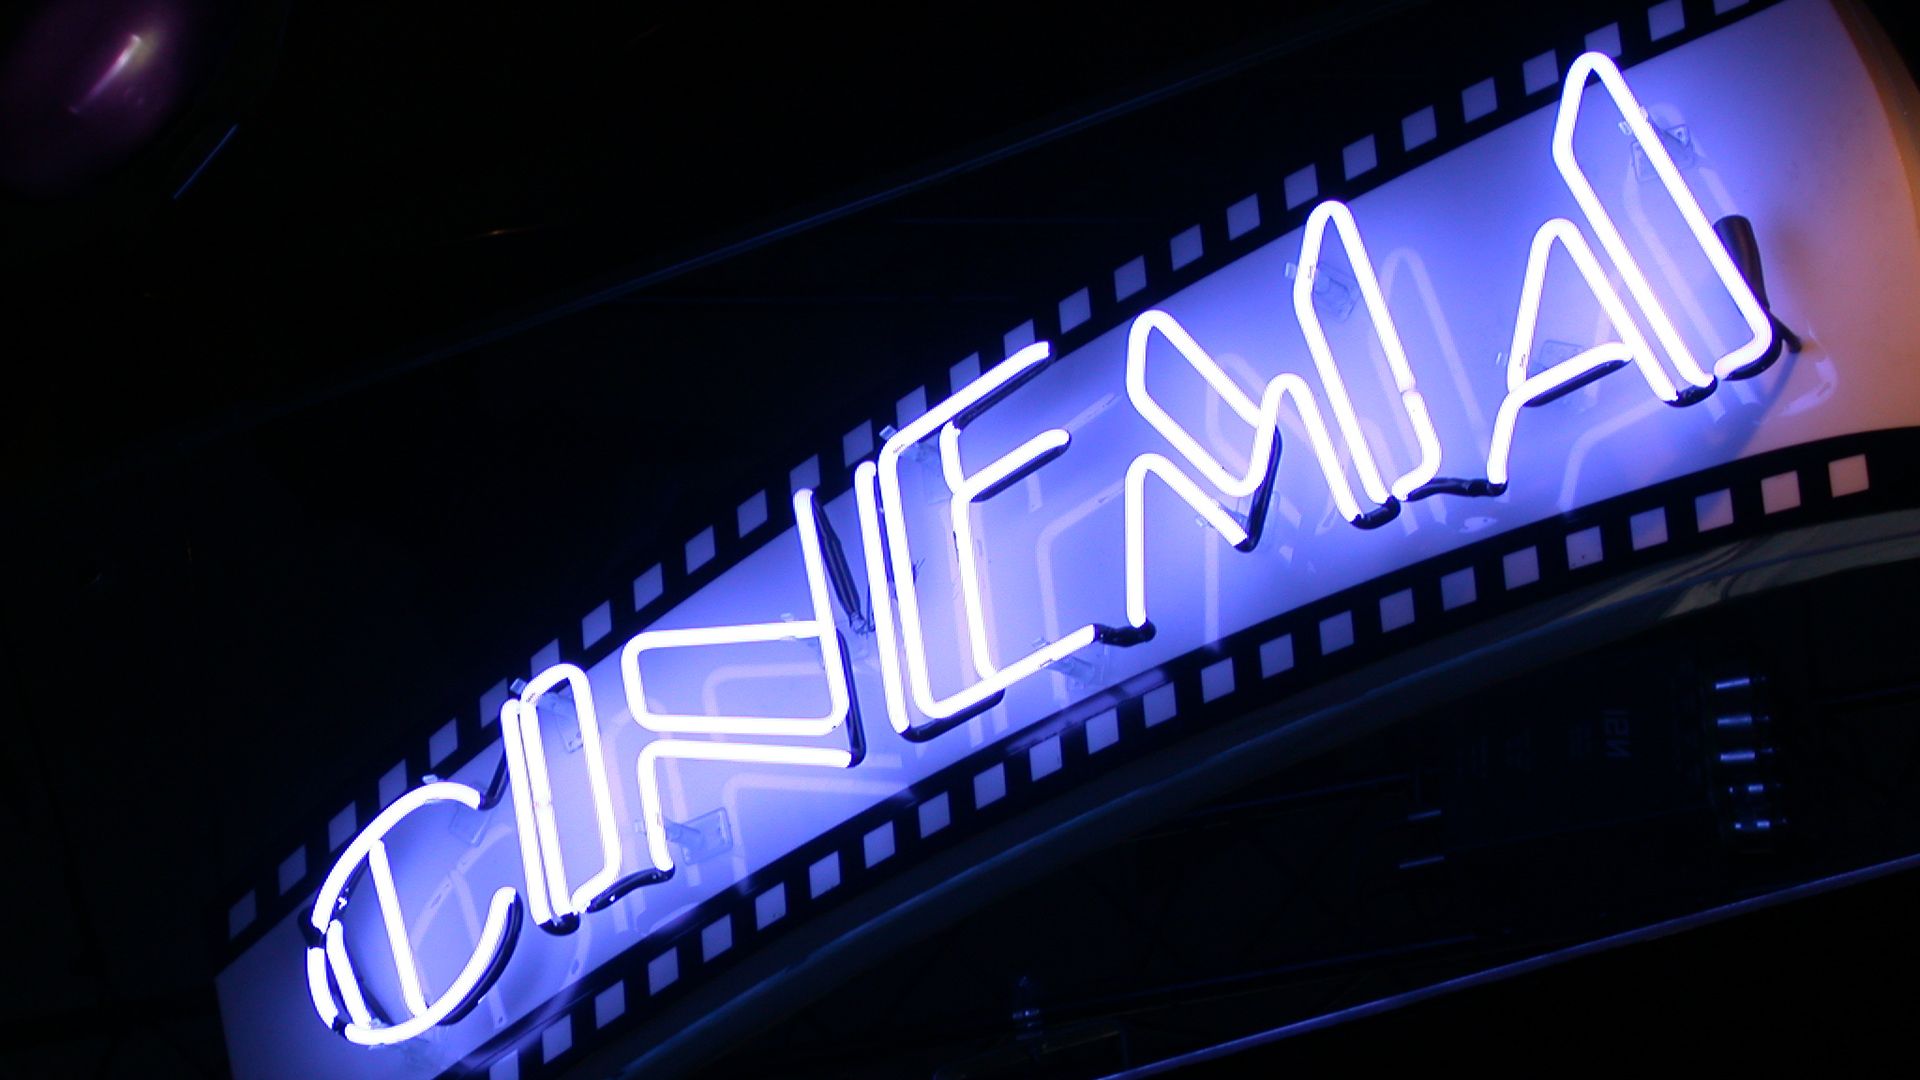 cine wallpaper,blau,neon ,neonschild,licht,elektronische beschilderung